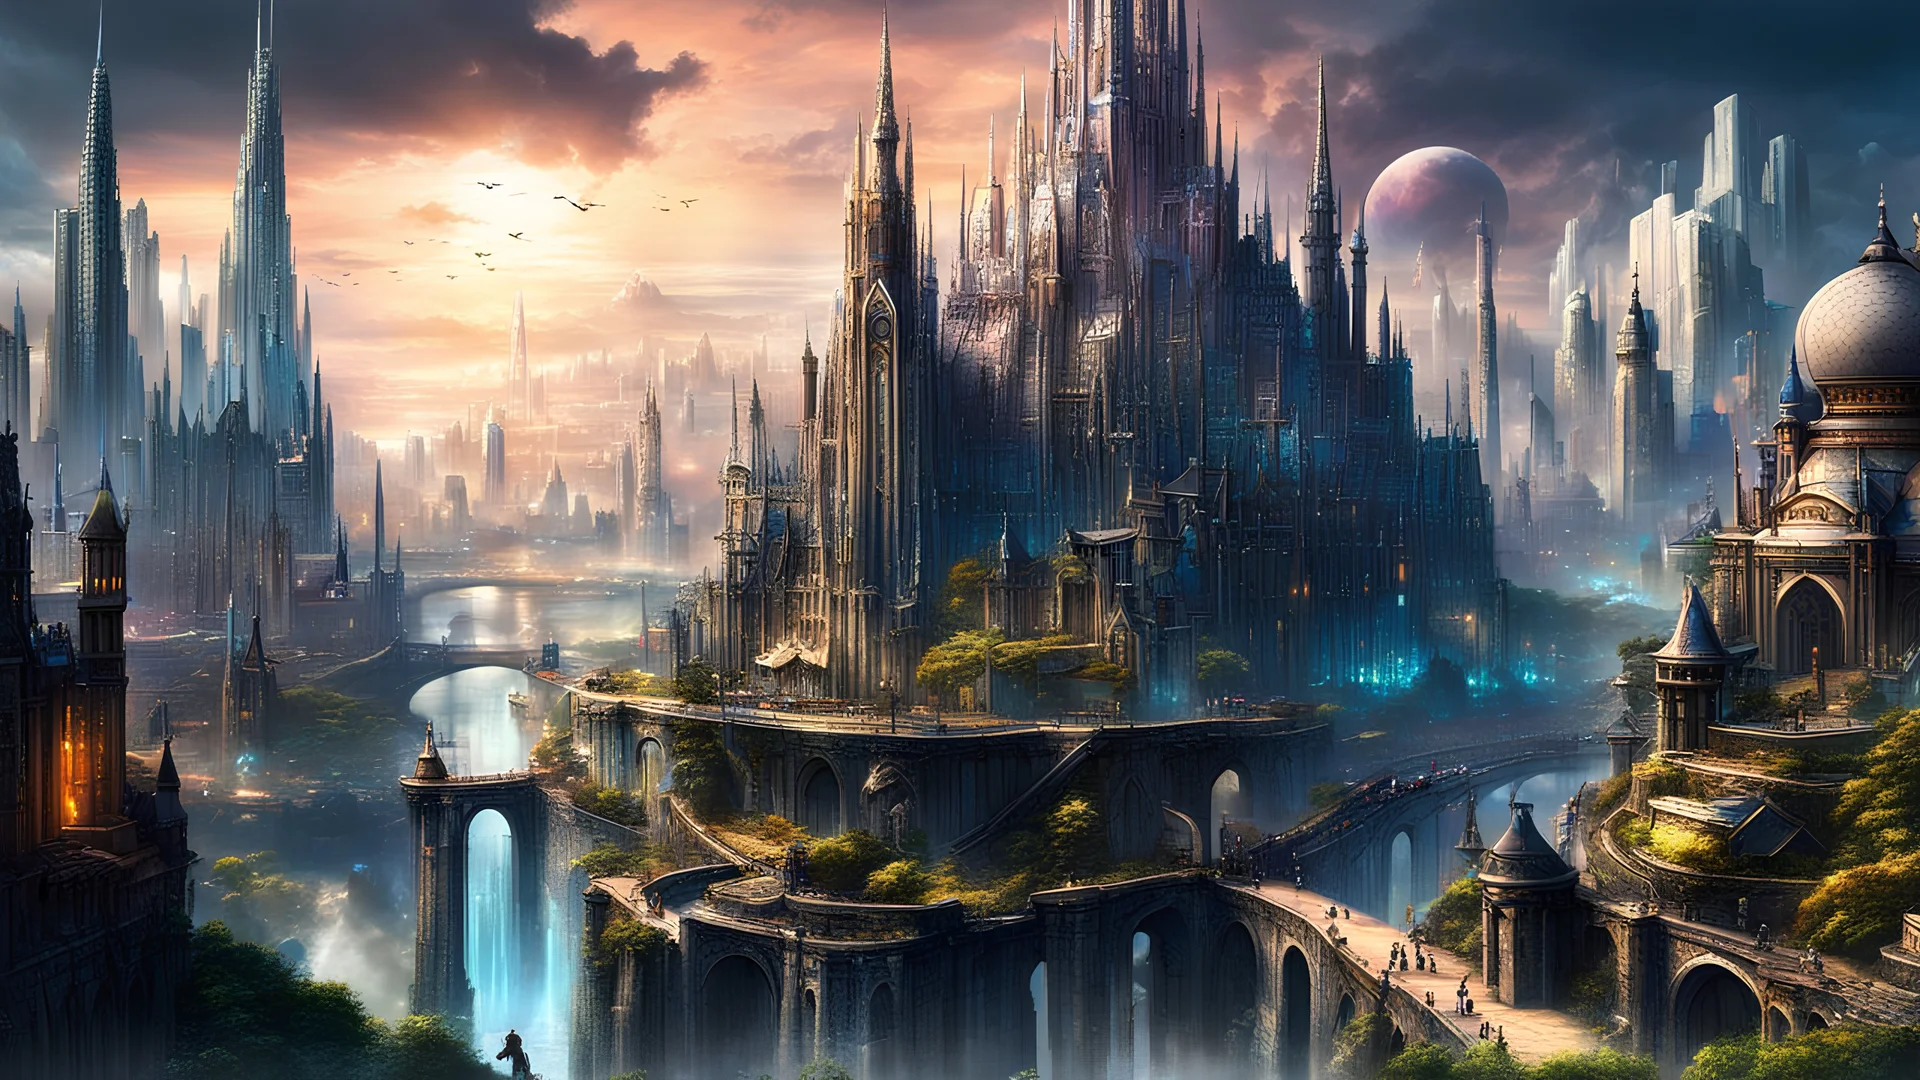 HD Magical Fantasy Metropolis